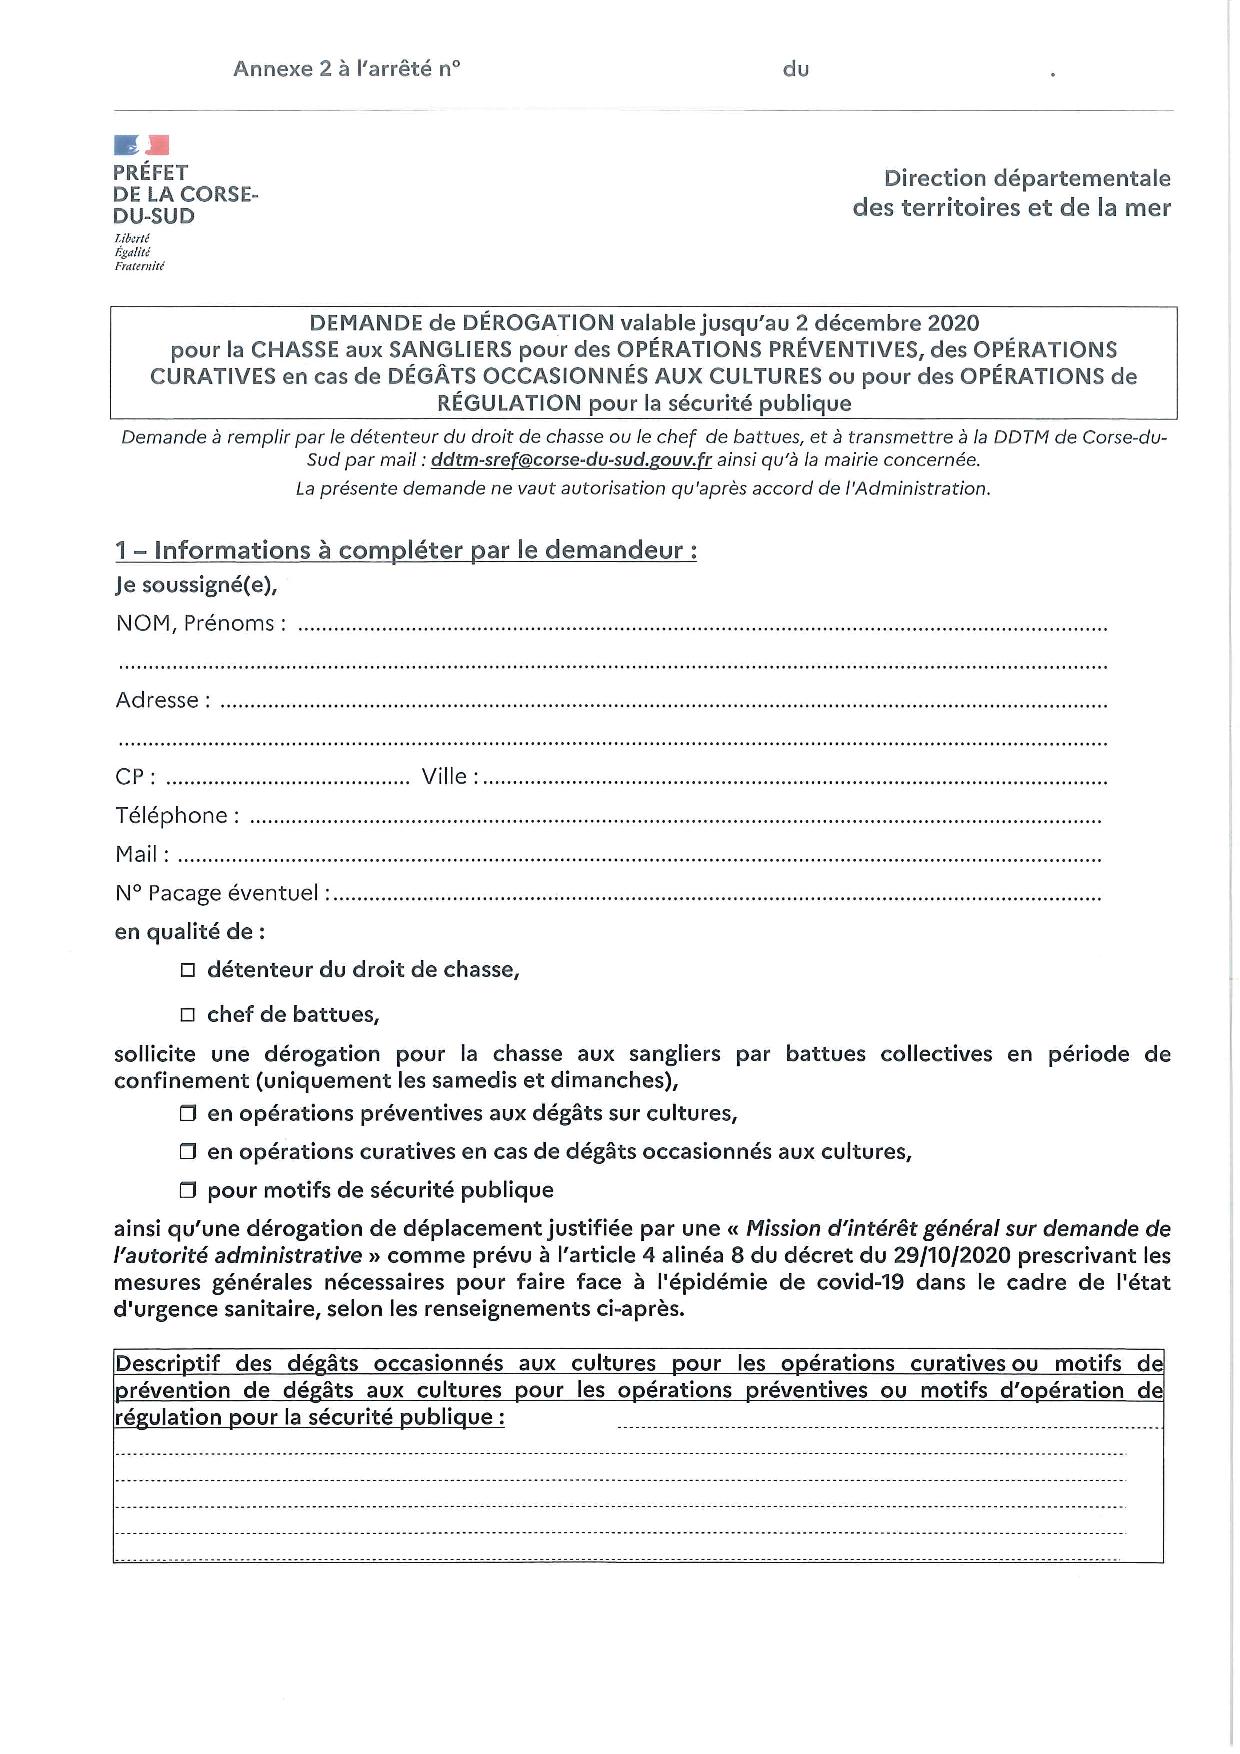  Arrêté n° 2A-2020-11-06-003 modifiant l'arrêté n° 2A-2020-11-02-008 du 02/11/2020 interdisant la chasse sur tout le territoire de la Corse du Sud